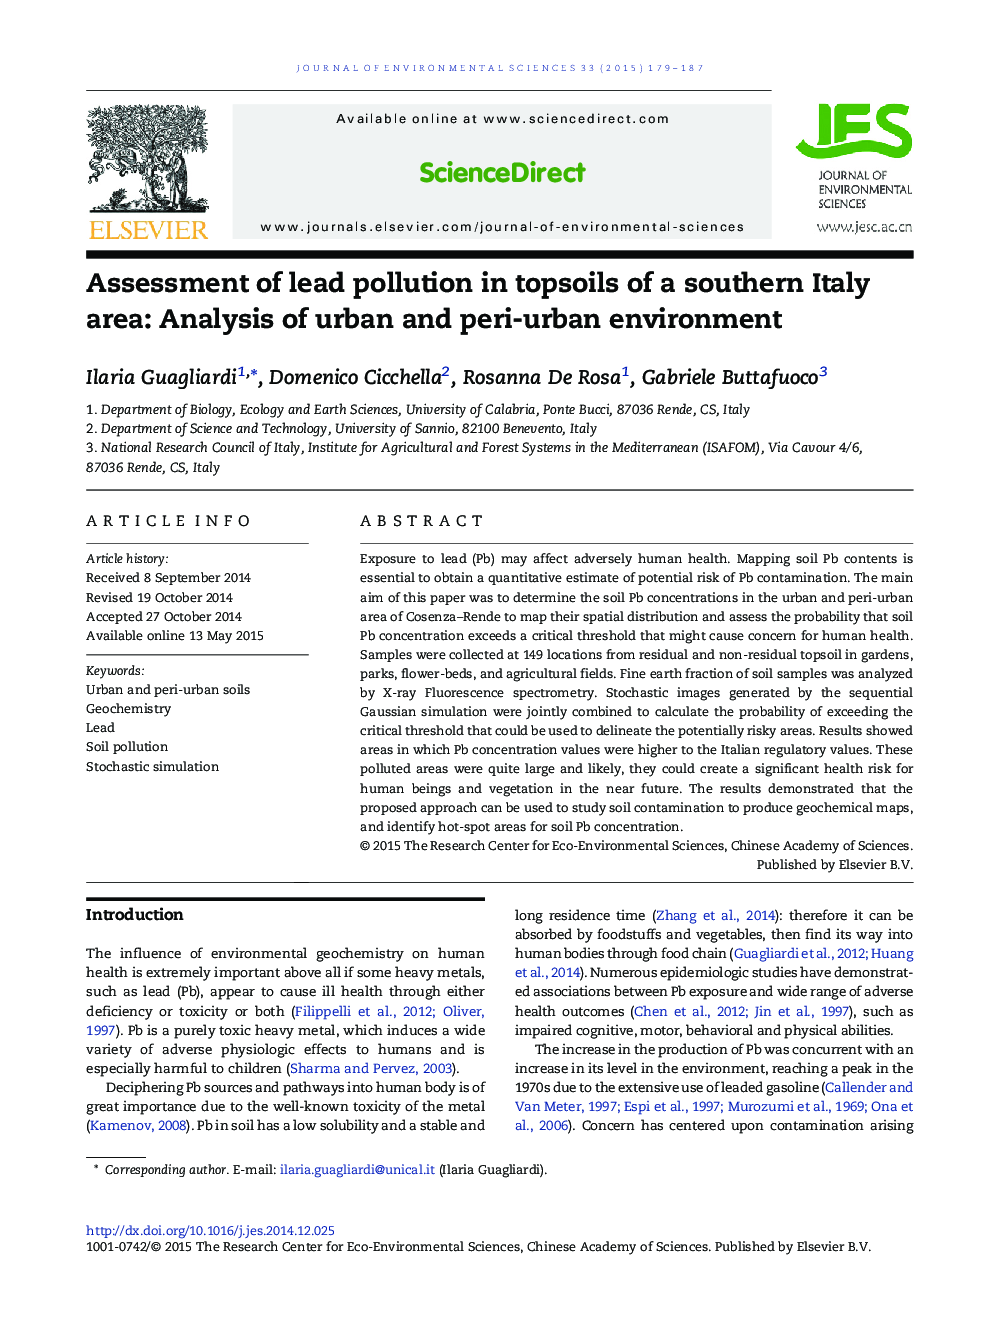 ارزیابی آلودگی سرب در خاک های فوقانی منطقه ی جنوبی ایتالیا: تجزیه و تحلیل محیط شهری و محیط پیرامونی 